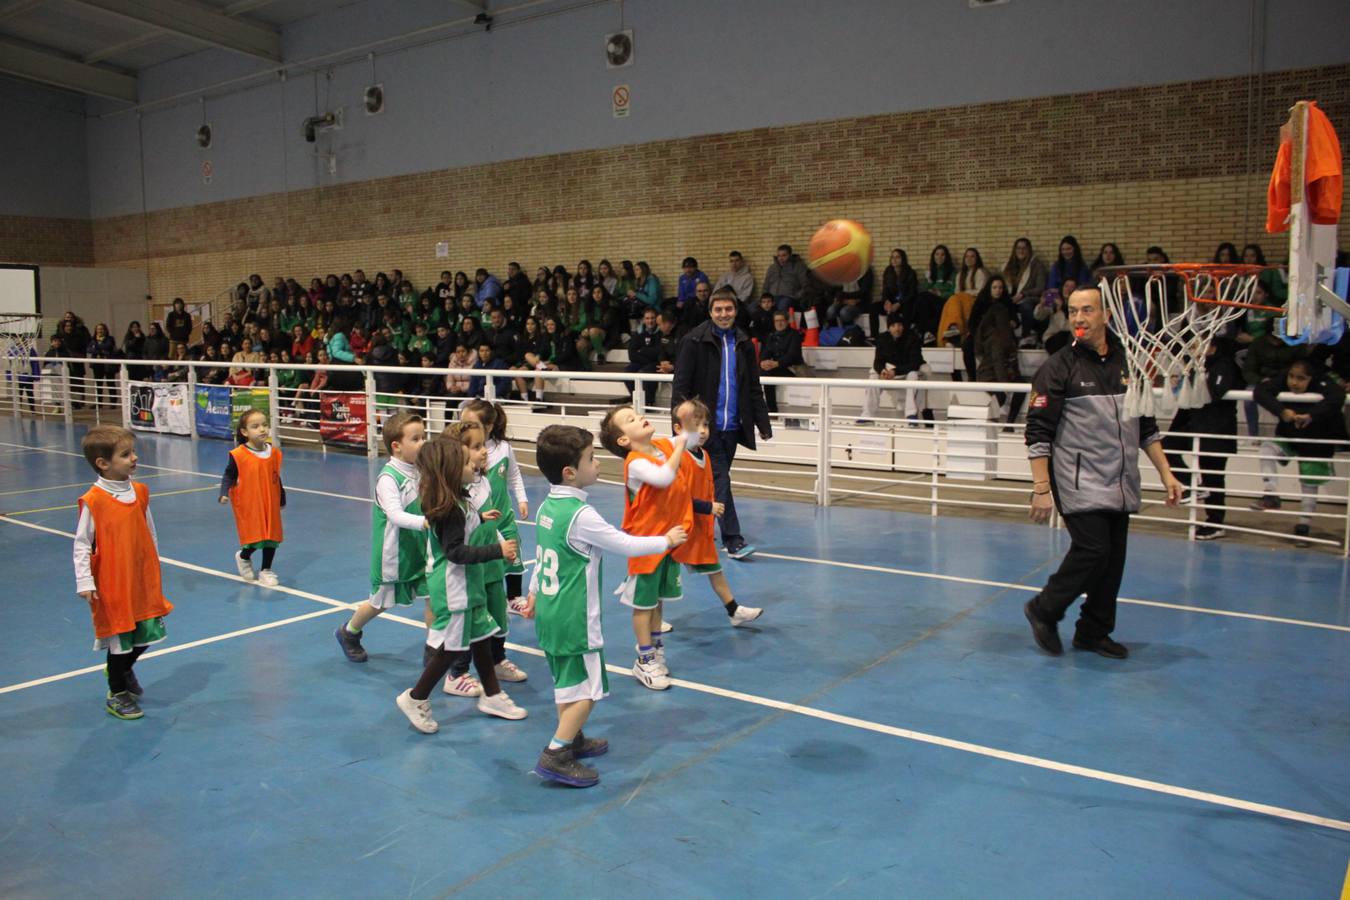 Fotos: Presentación de la temporada en el XV aniversario del Club Baloncesto Alfaro